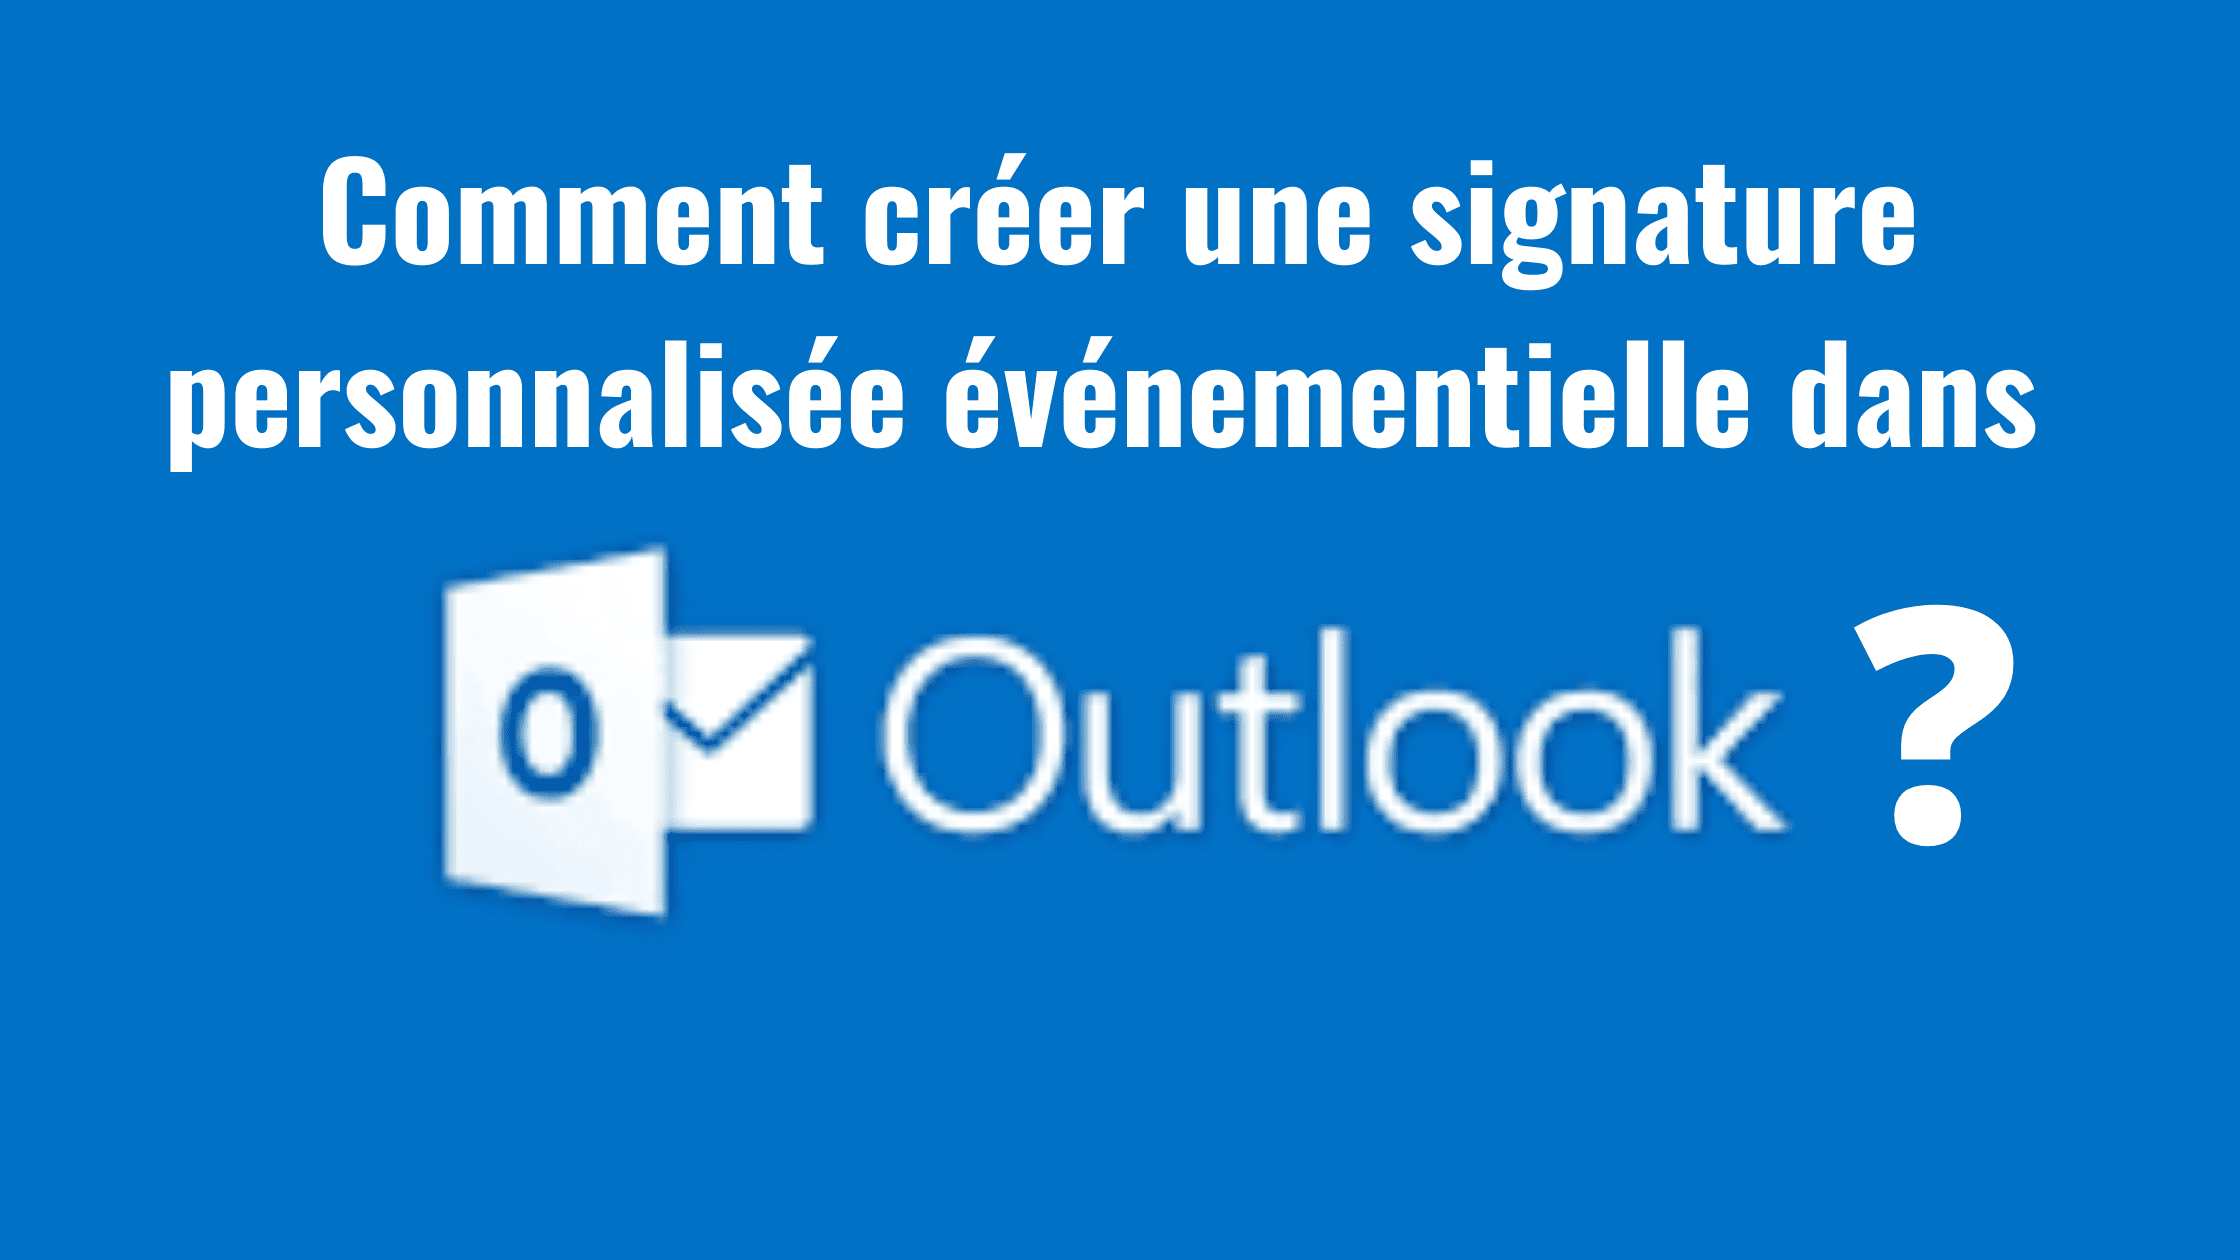 Comment créer une signature personnalisée événementielle dans Outlook ? 16